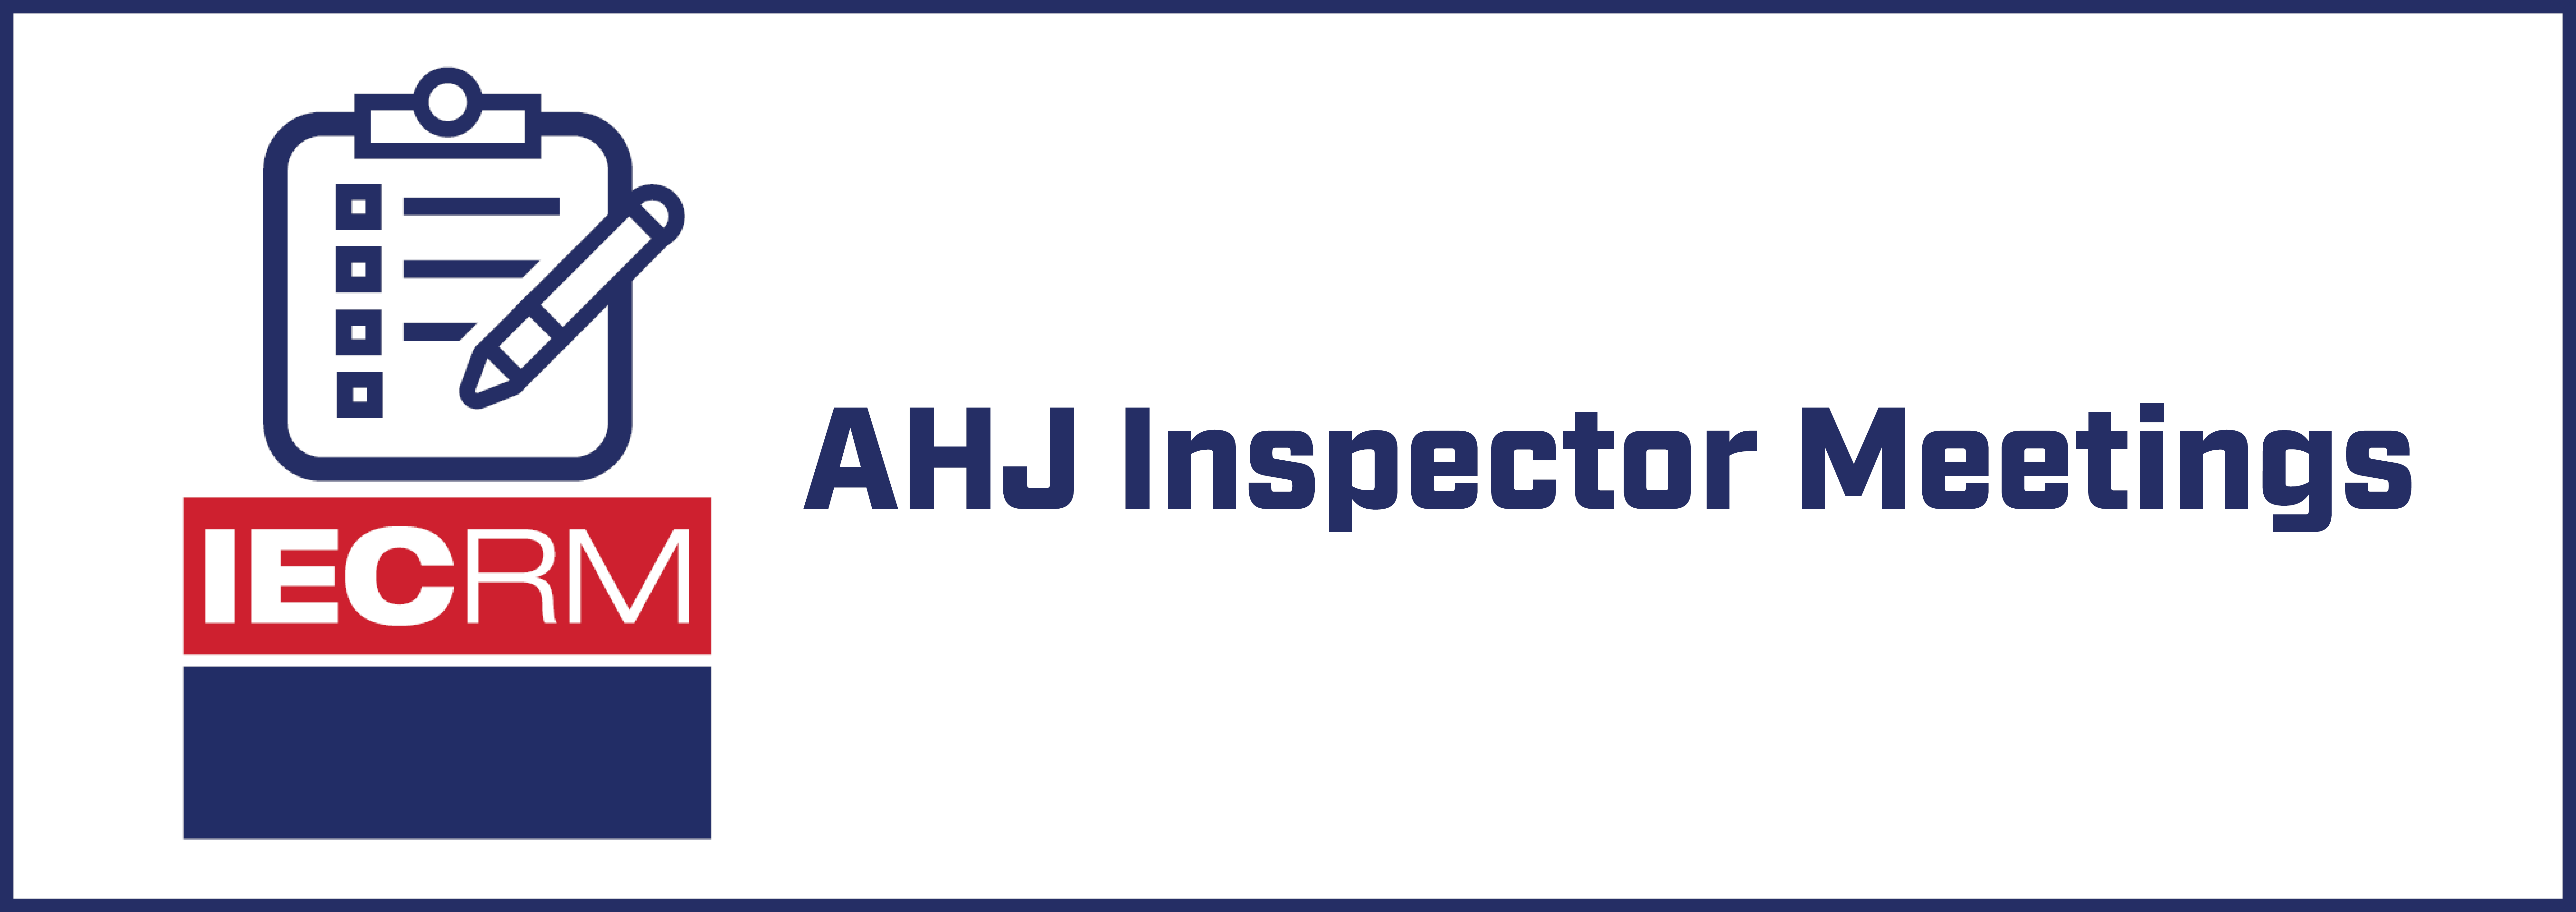 IECRM AHJ Inspectors Meeting - November 2022